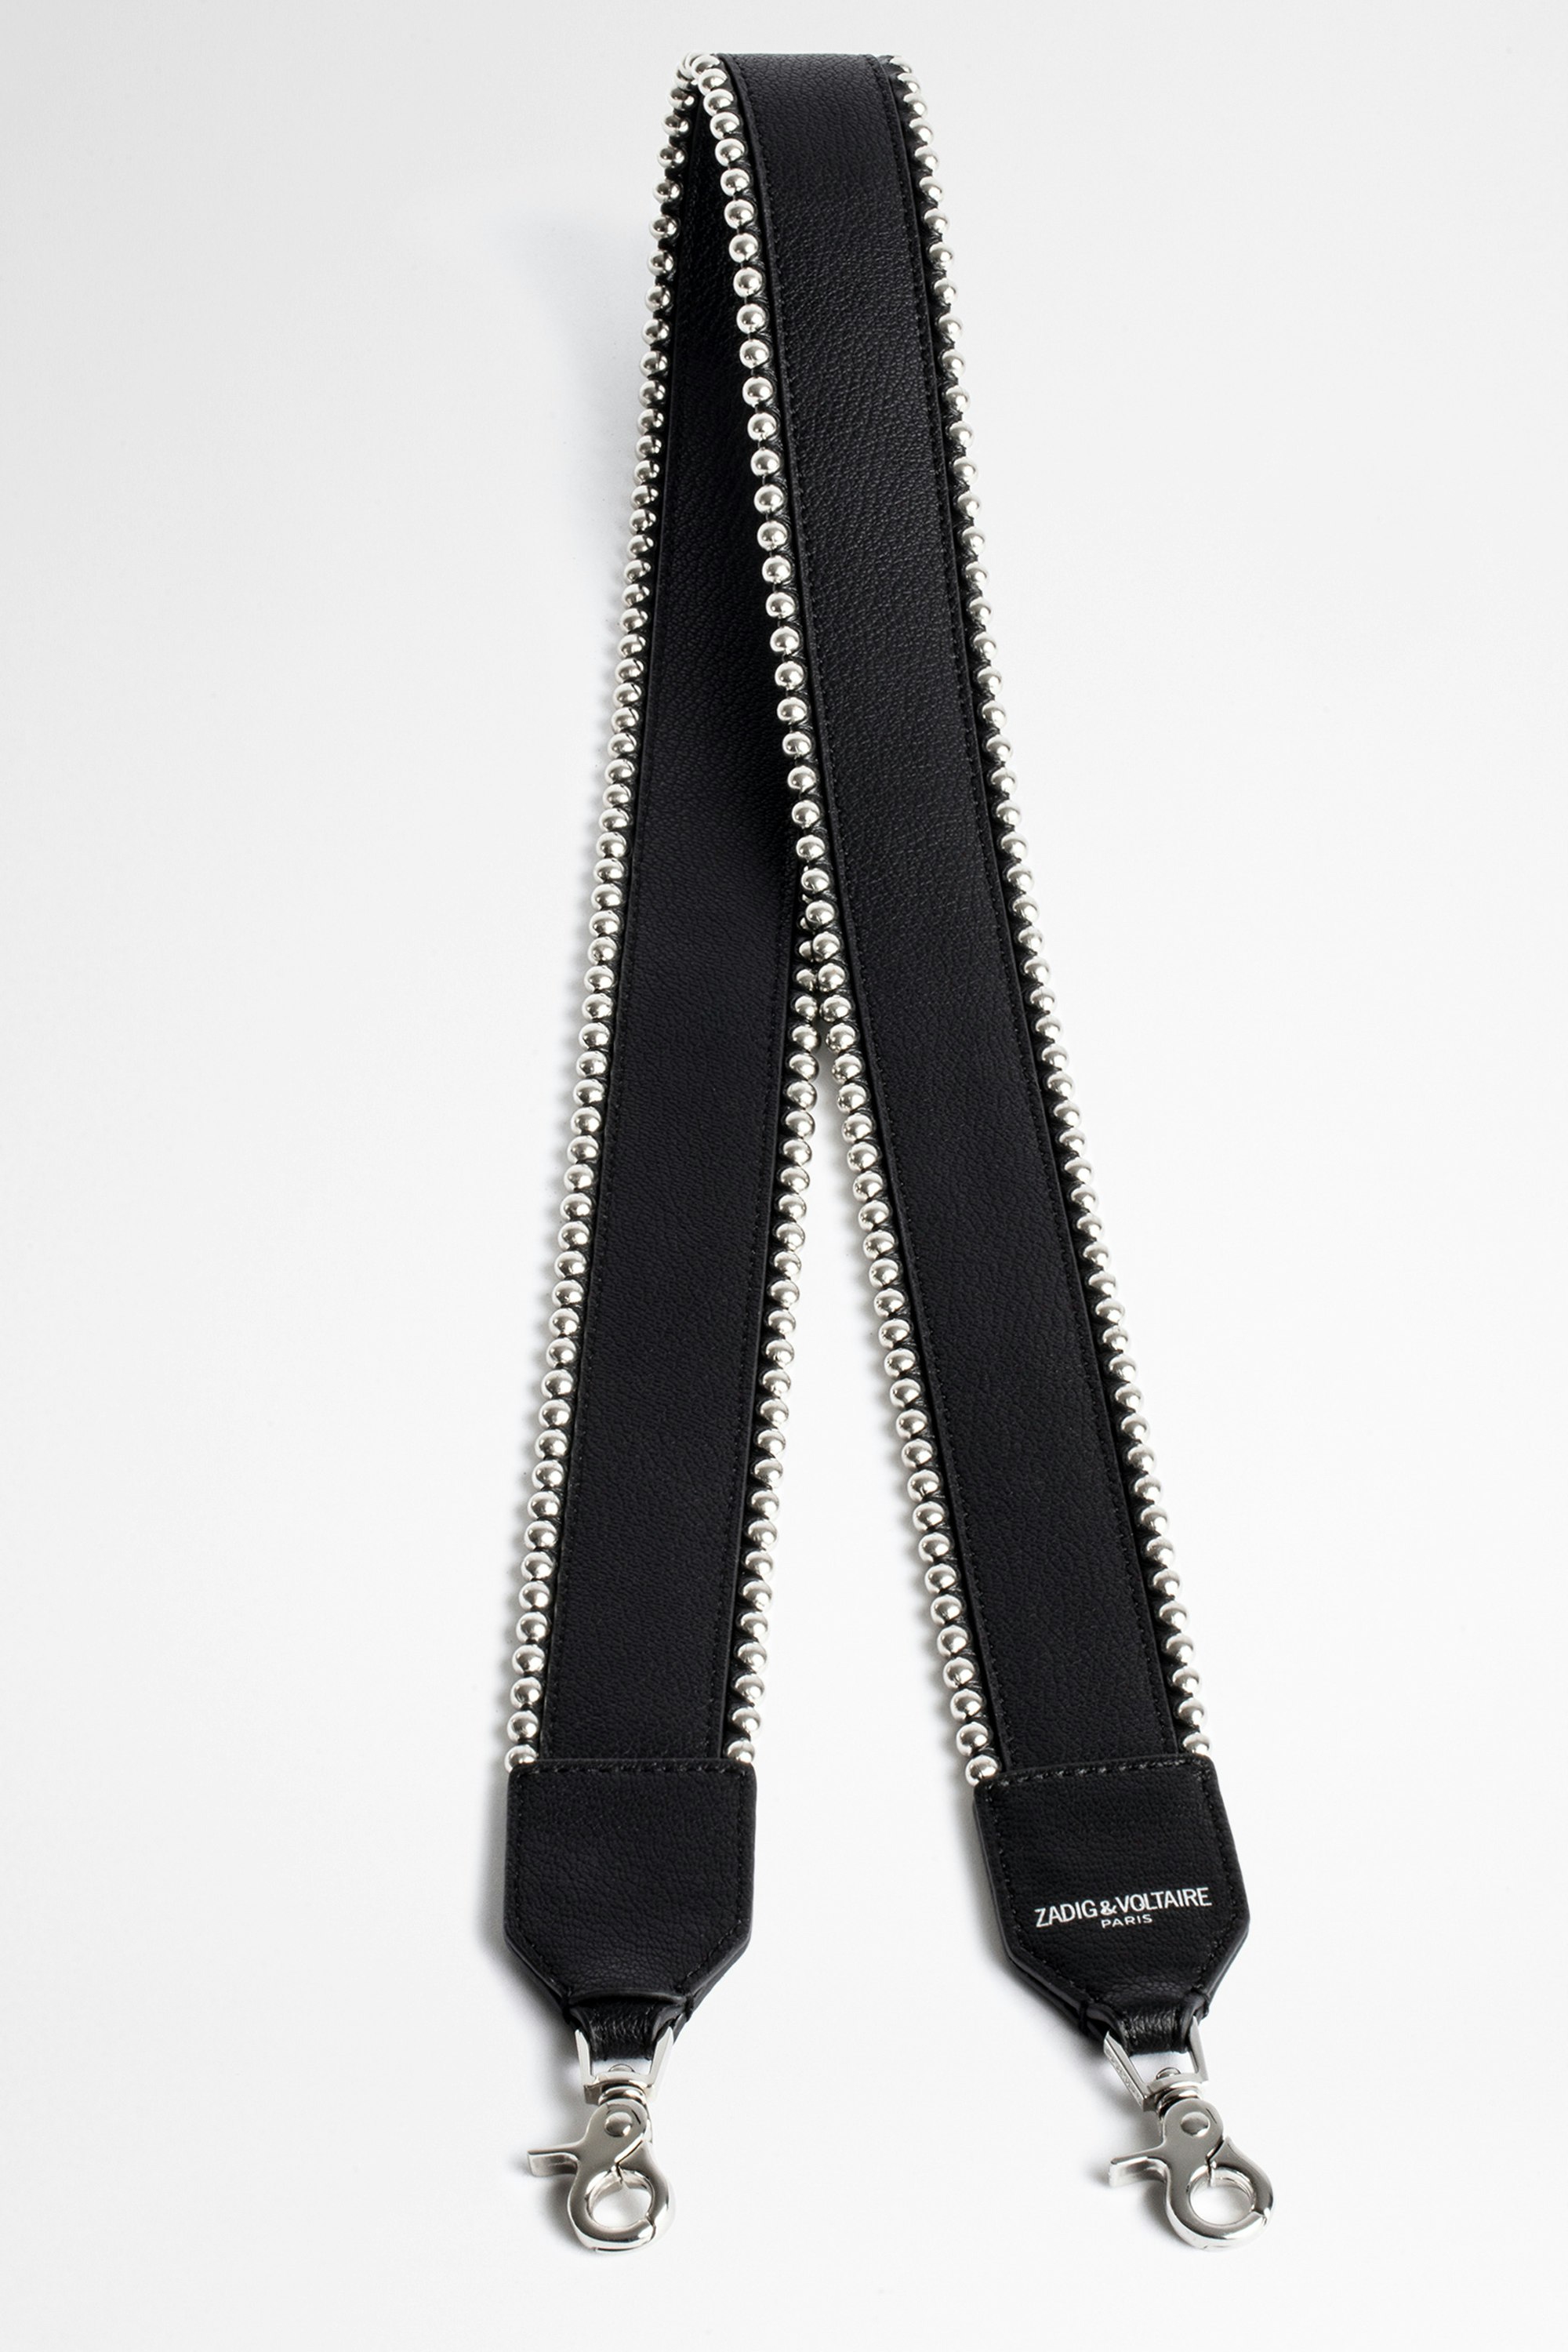 Stud Piping Shoulder Strap - Black leather shoulder strap